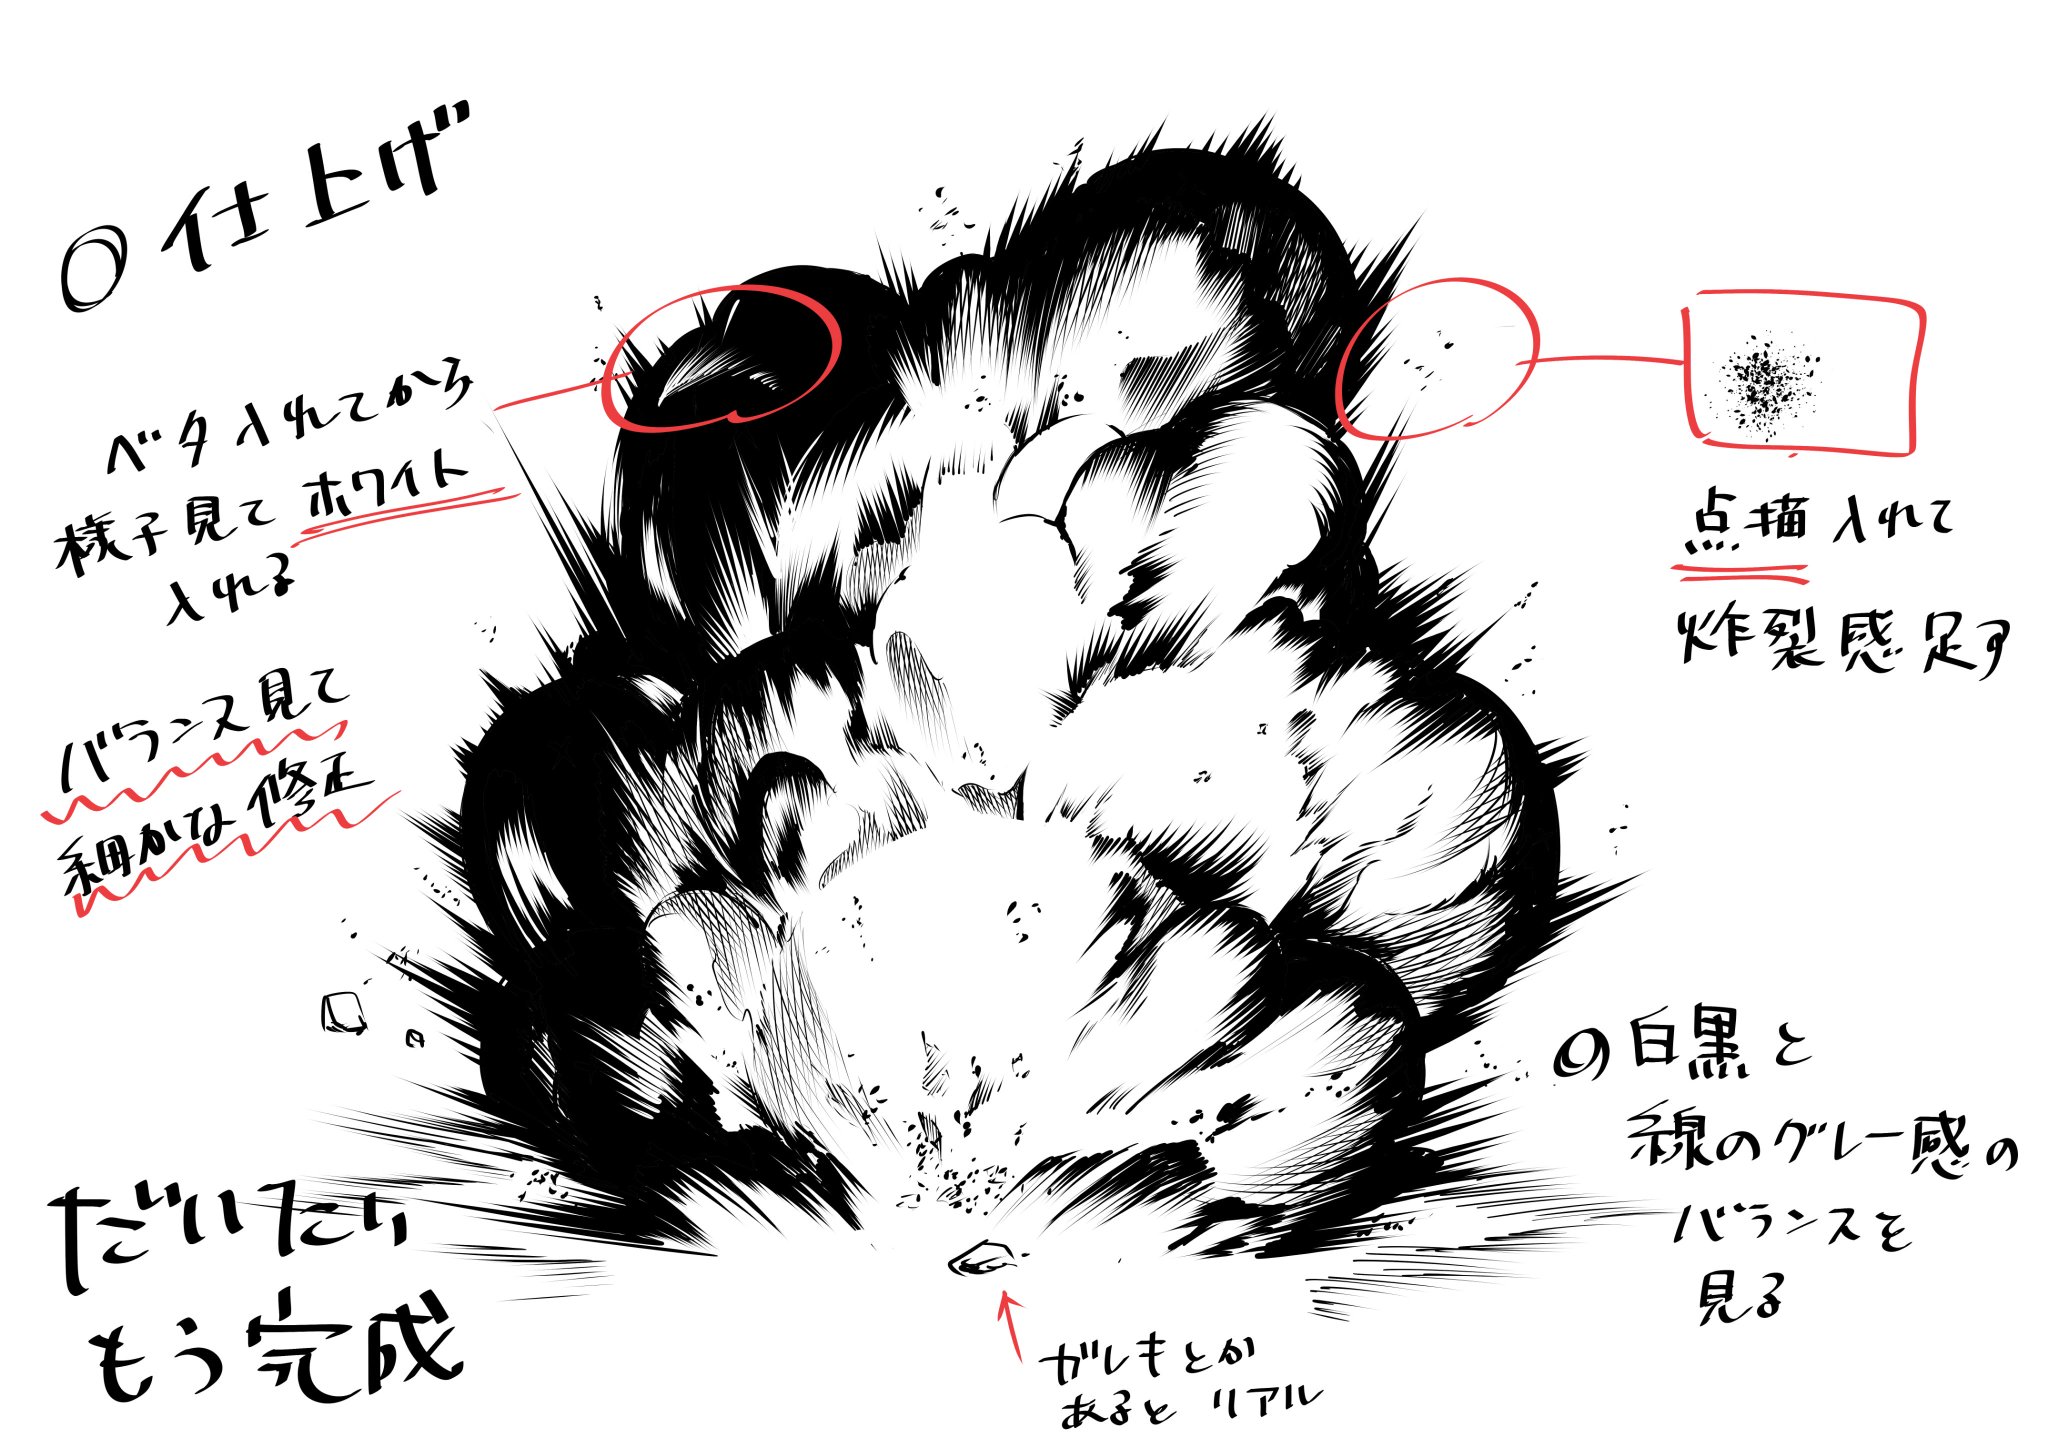 がしたに 教えてもらった 素人でもそれっぽく描ける爆発エフェクト描き方まとめです ケリンの絵